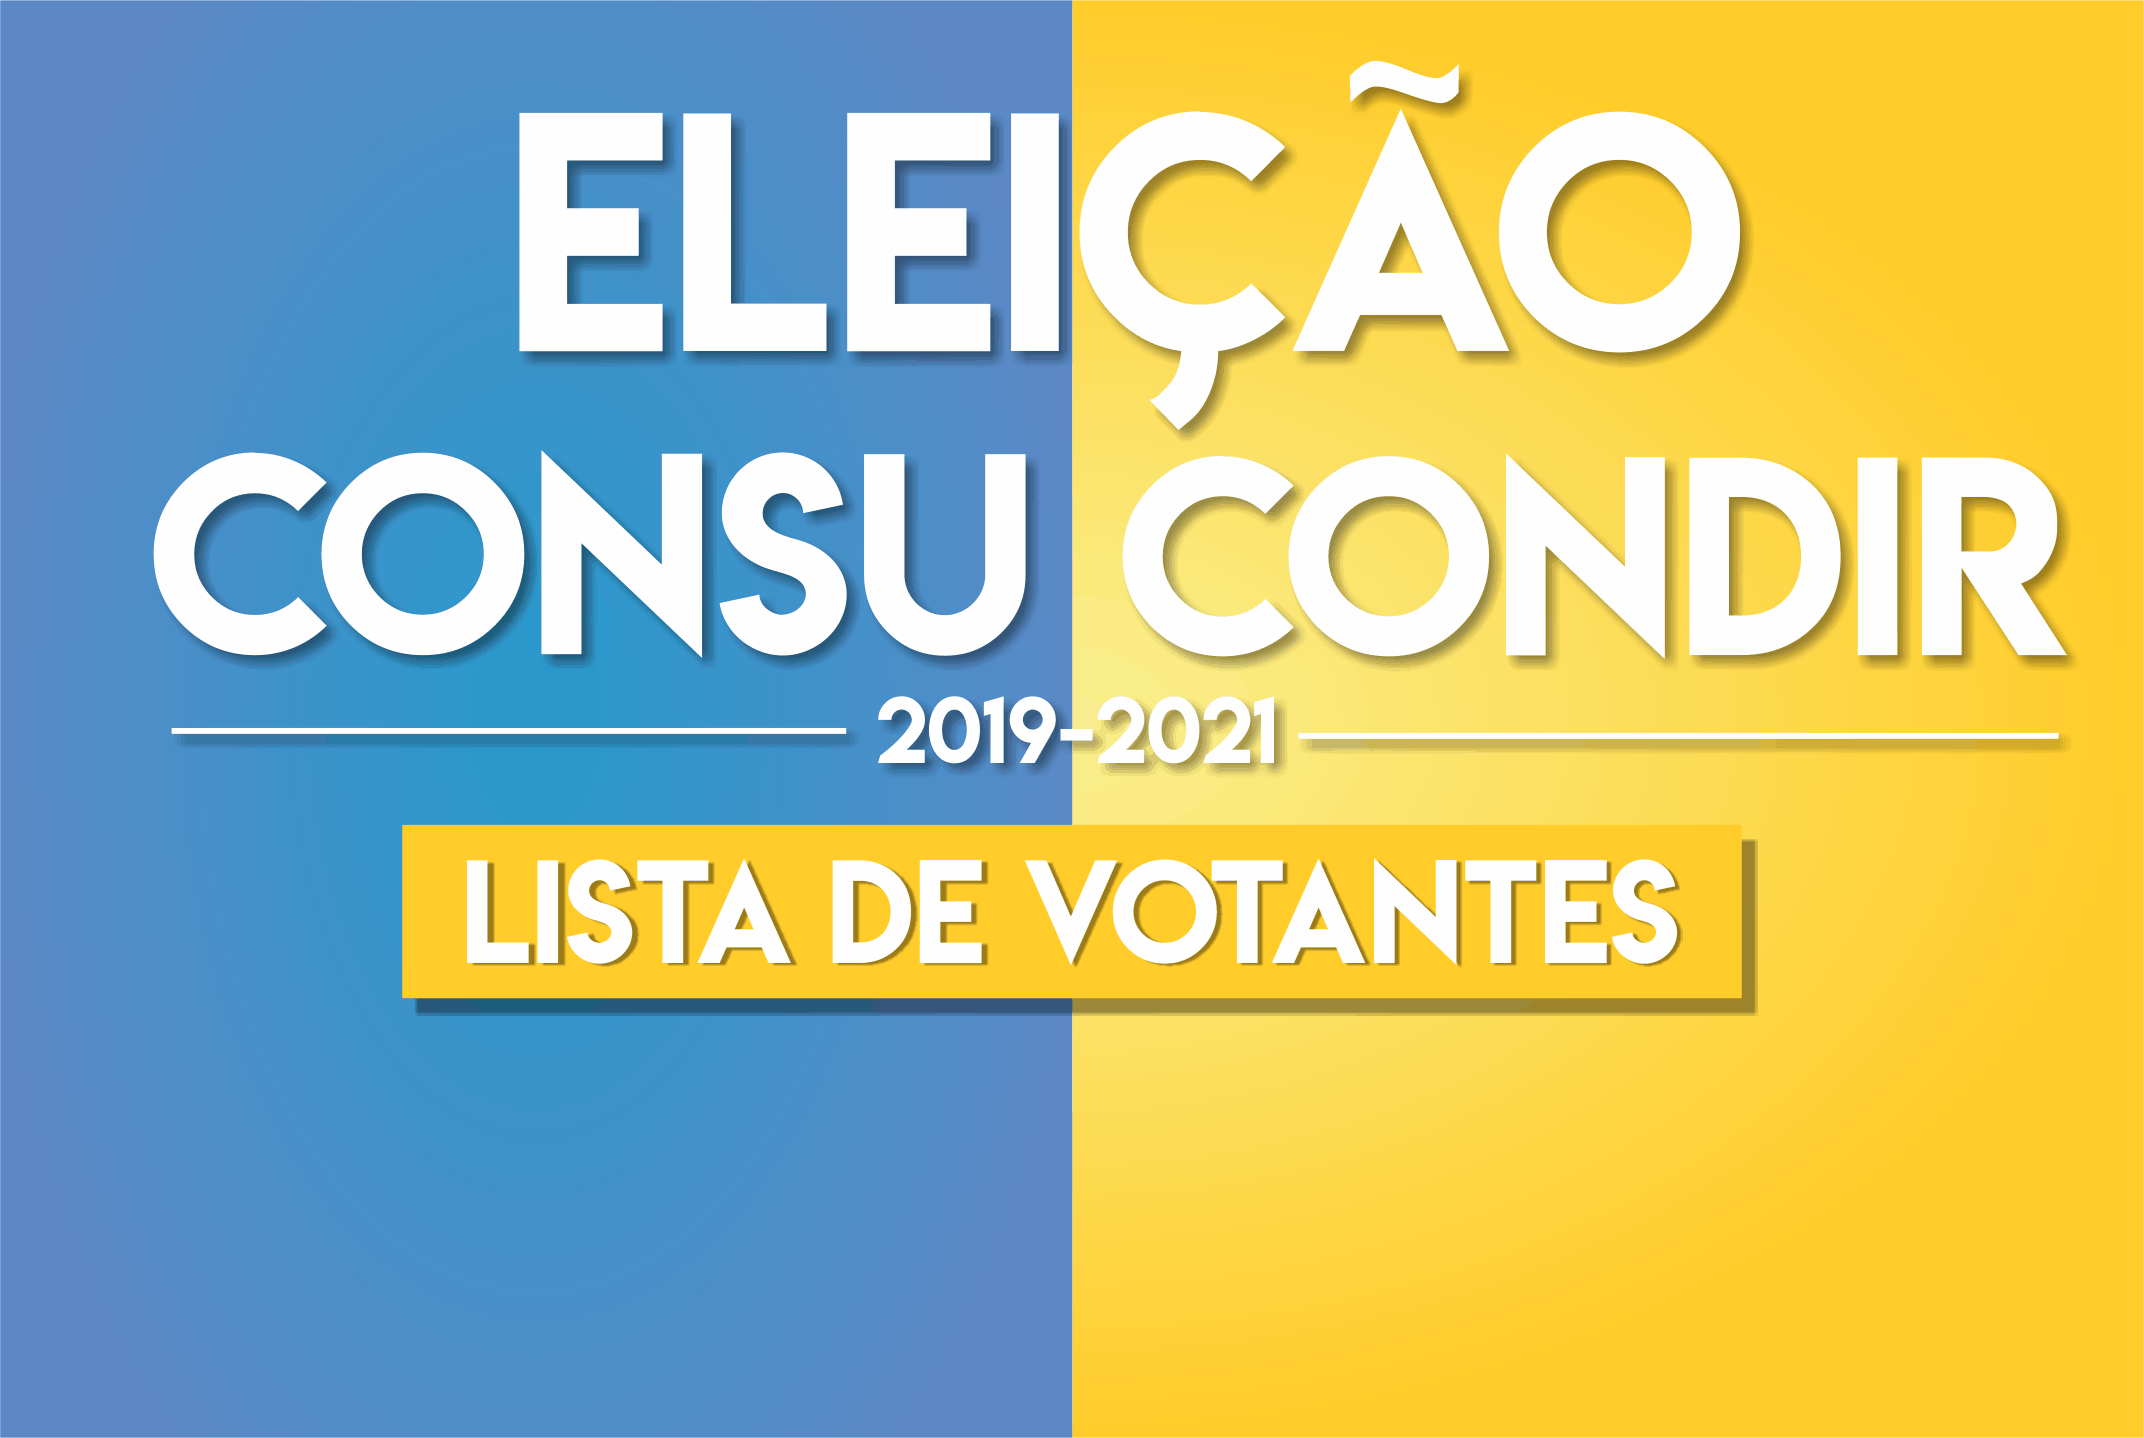 Comissão Eleitoral torna público listas de votantes CONSU/CONDIR